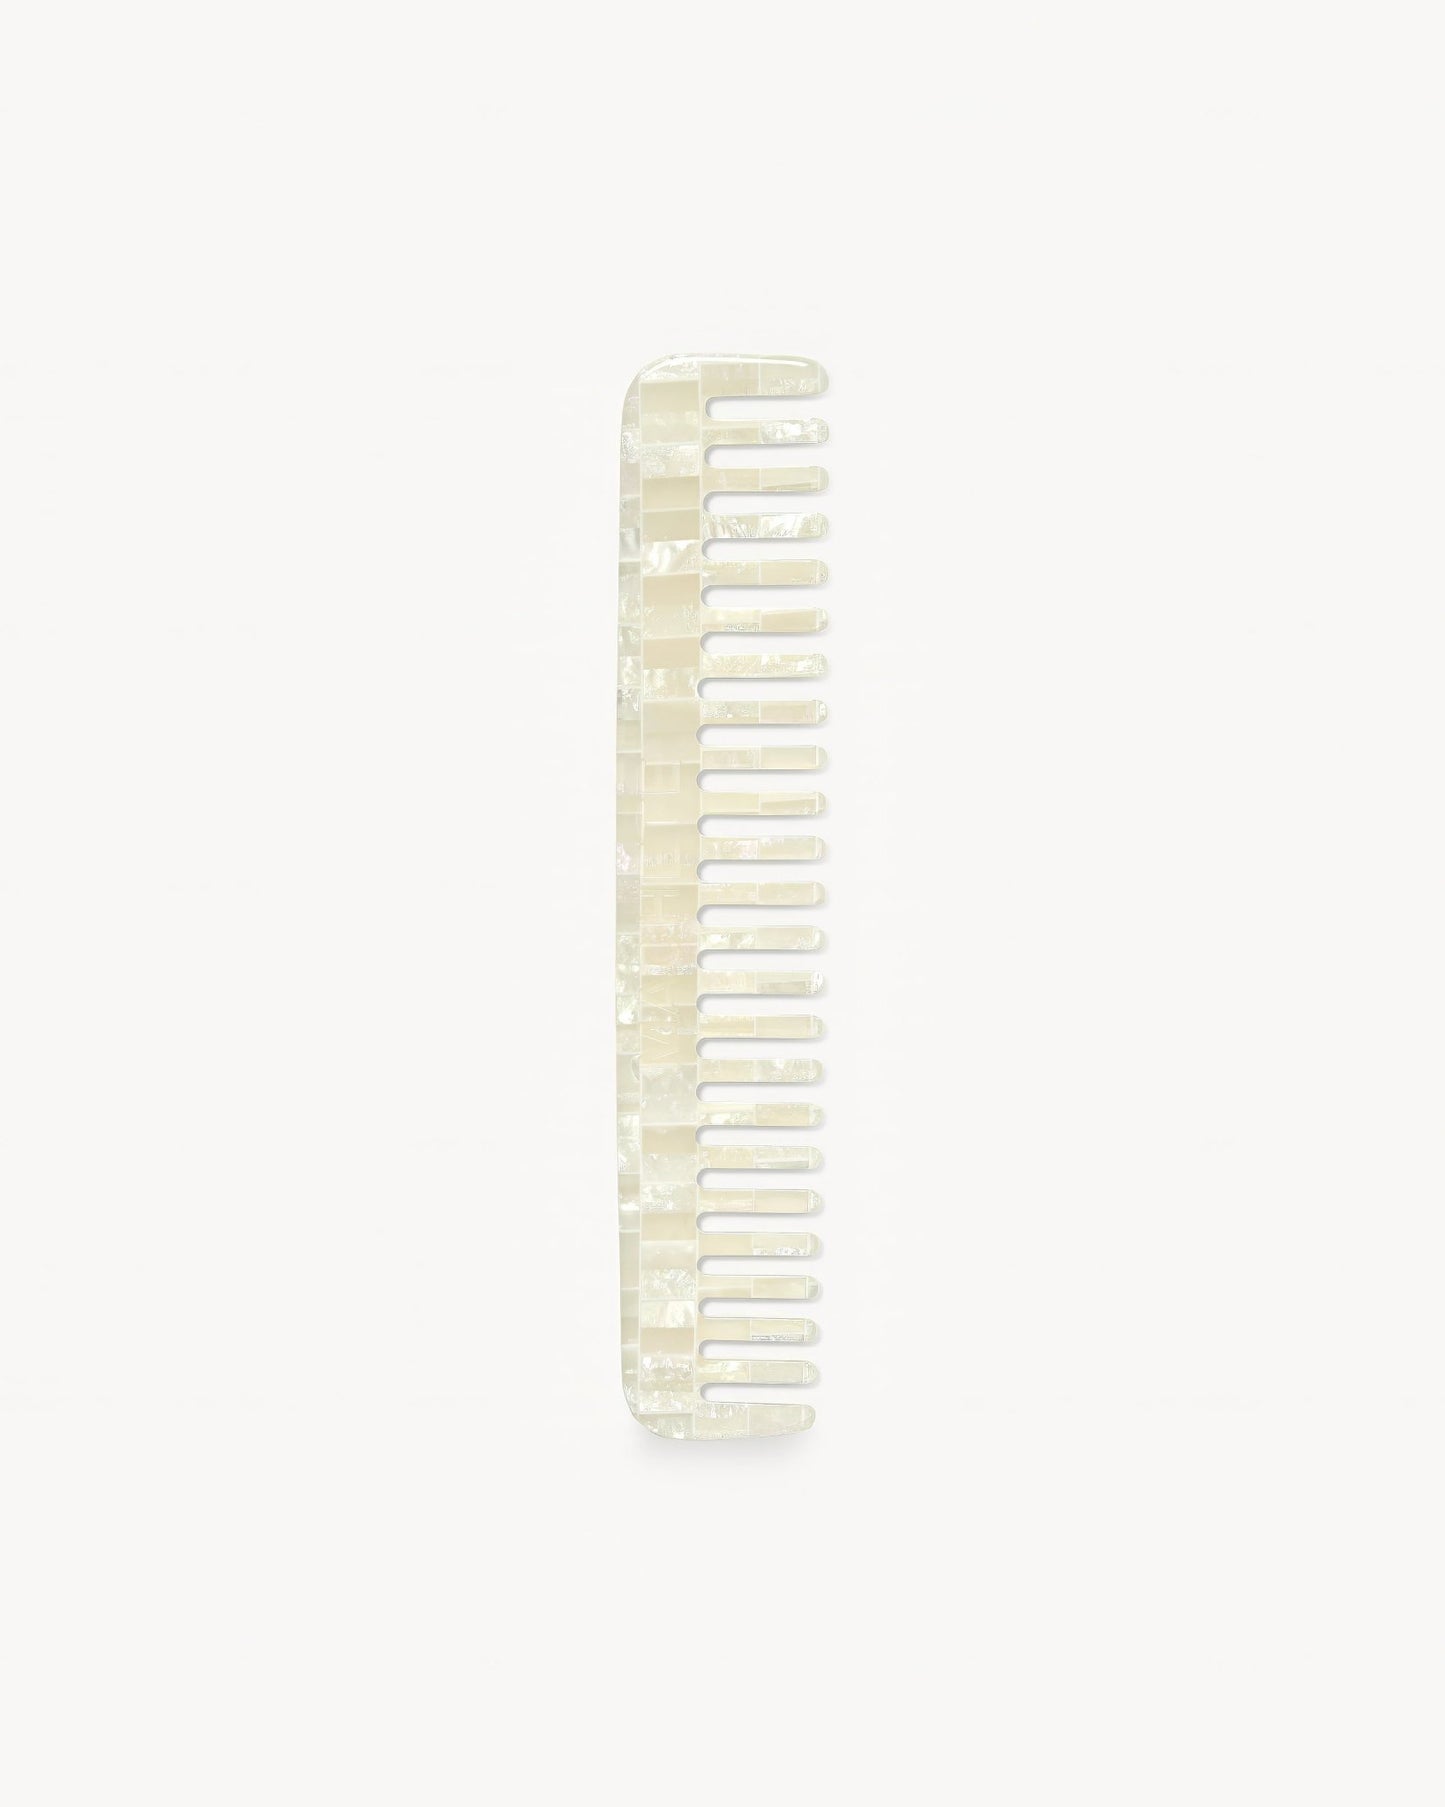 No. 3 Comb in Opalite Shell Checker - MACHETE